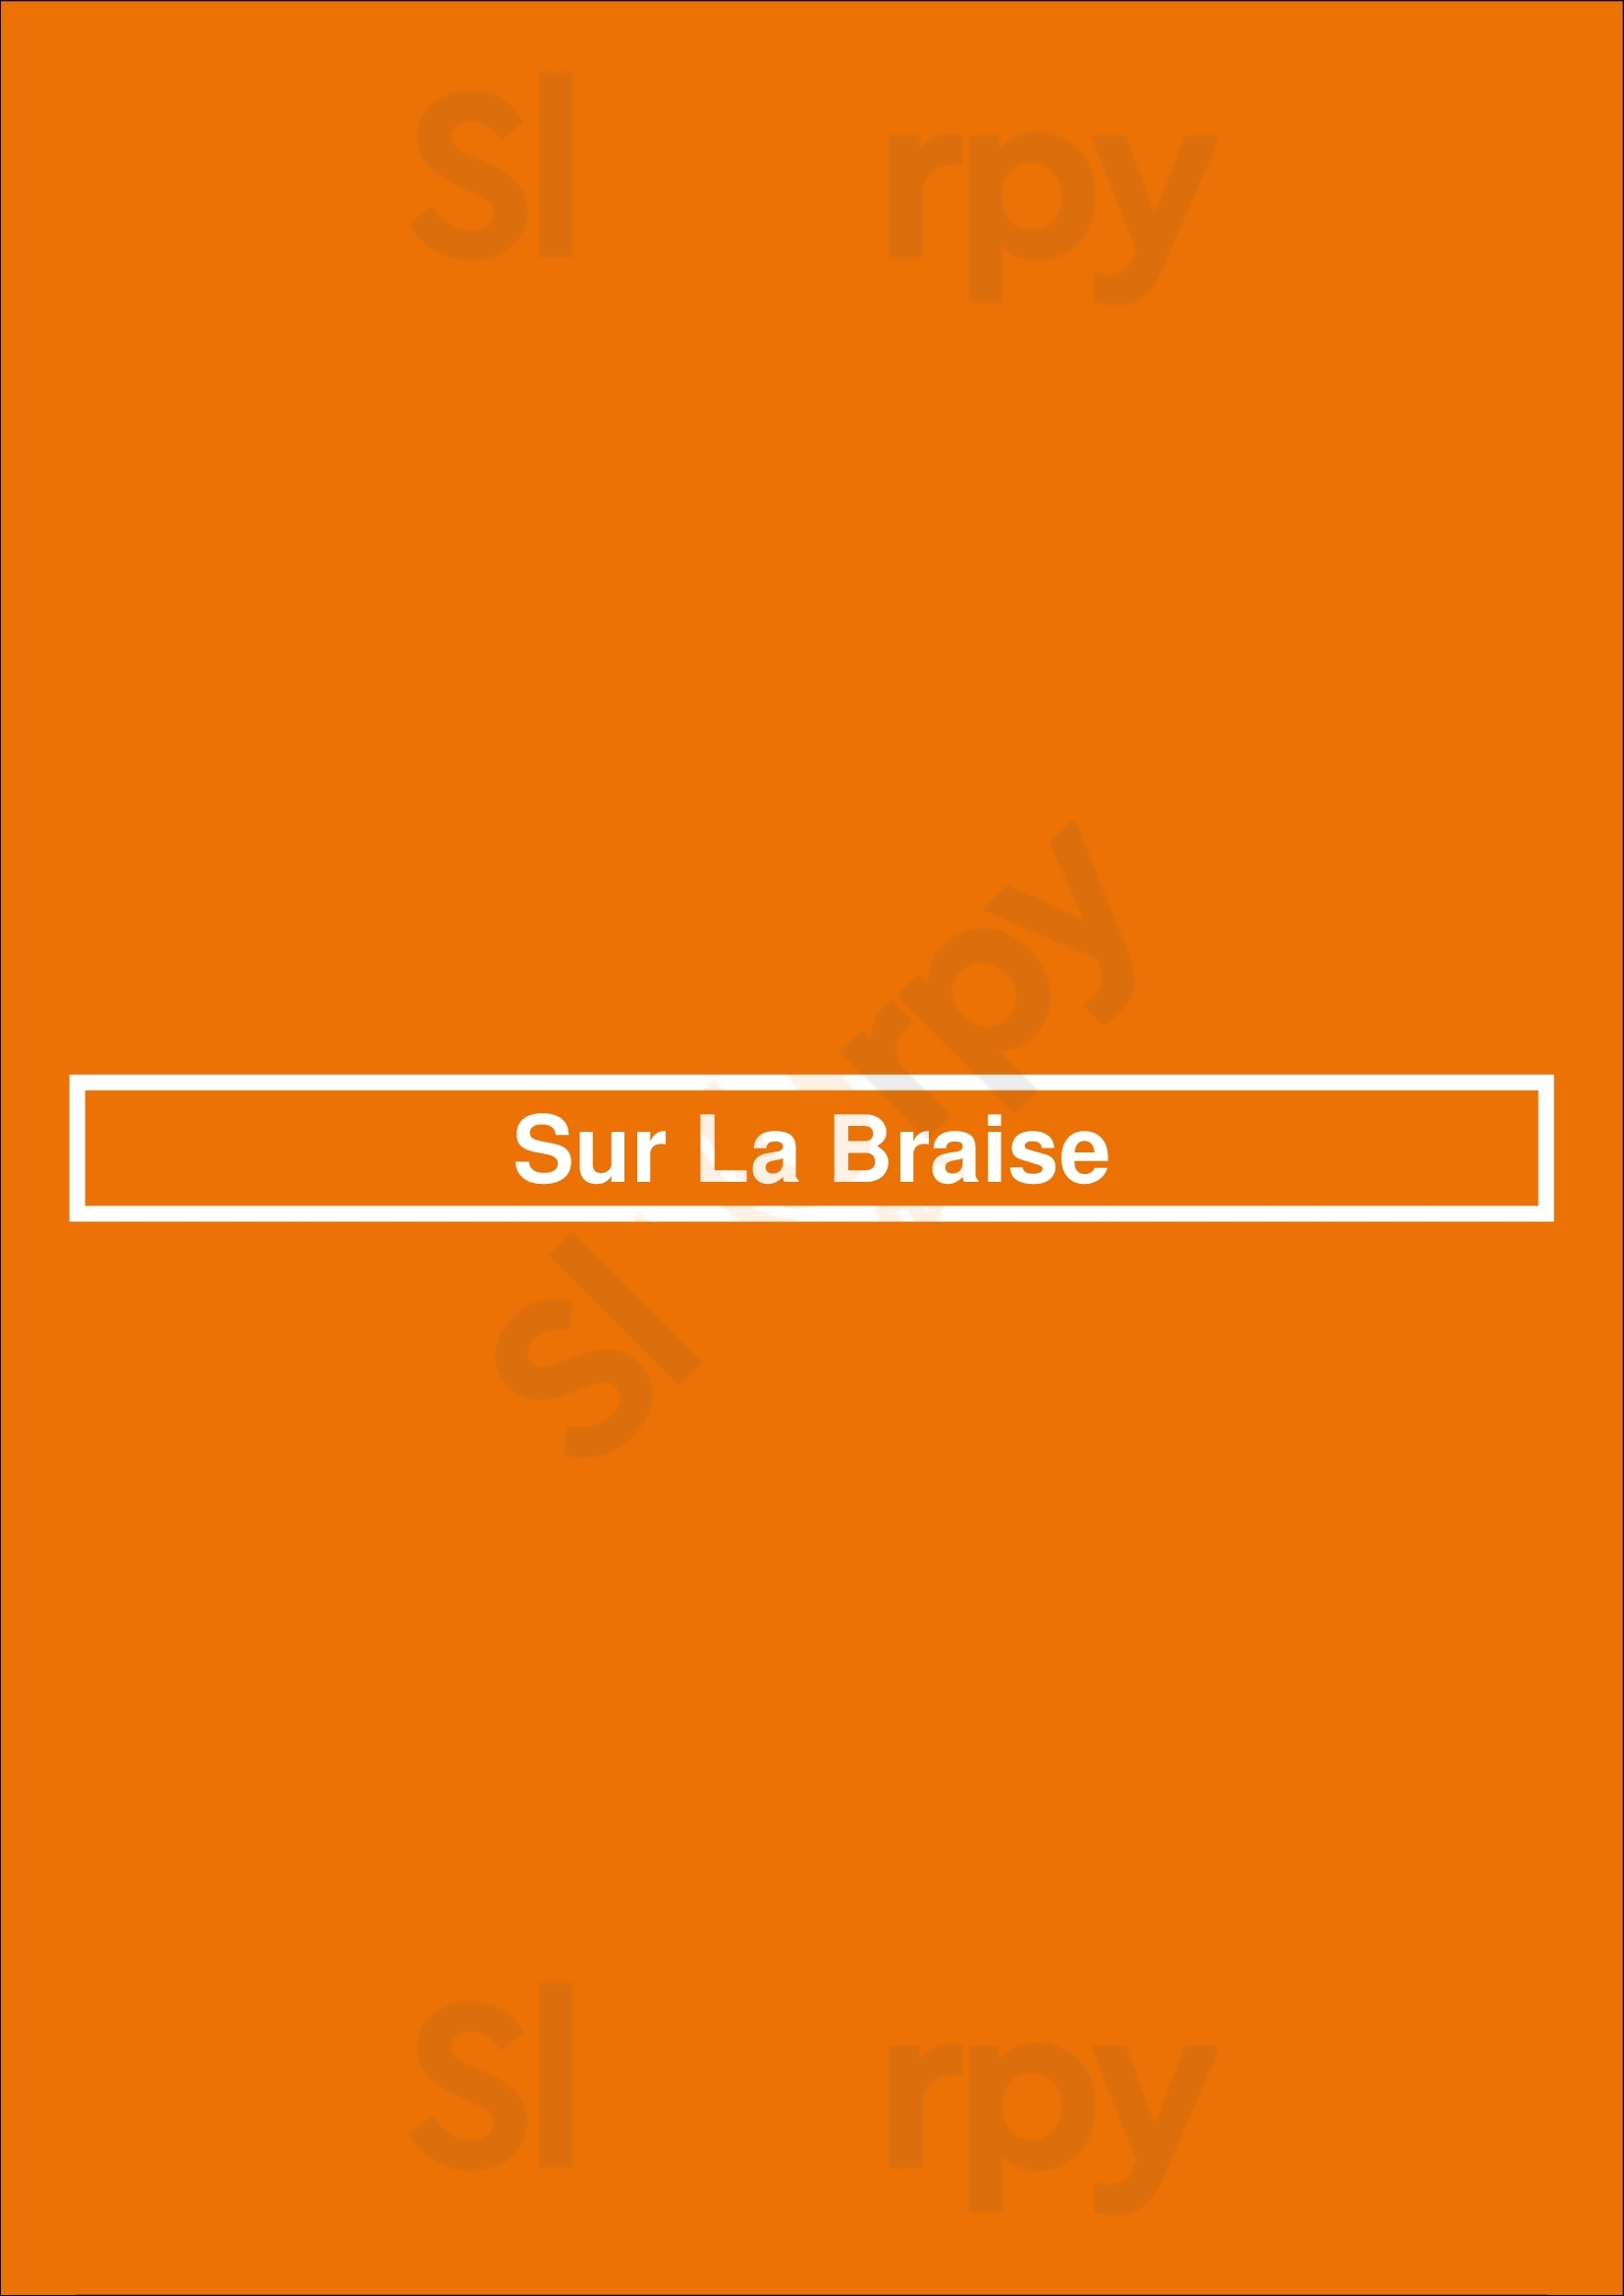 Sur La Braise Corse Menu - 1